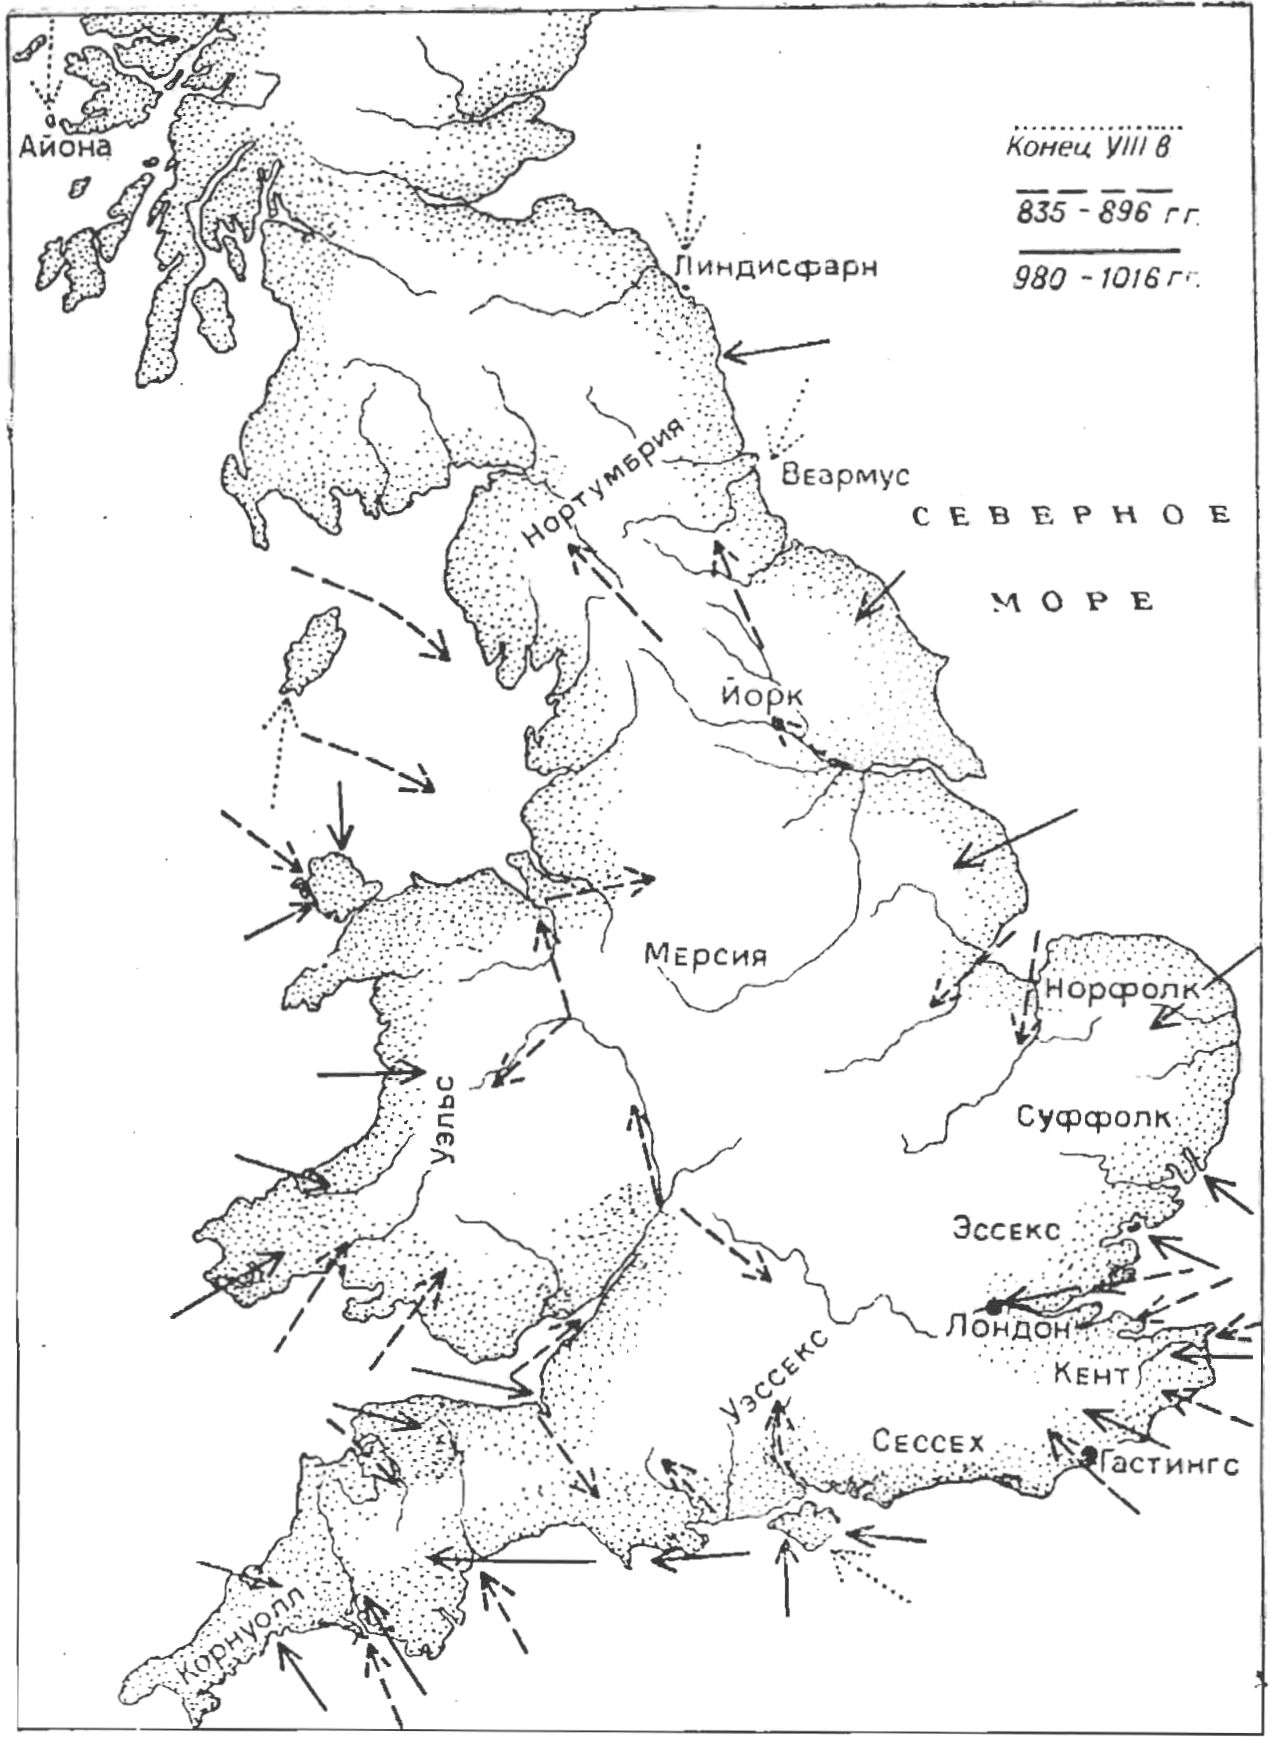 Рис. 4. Нападения викингов на Англию с конца VIII до начала XI вв. (по [19])